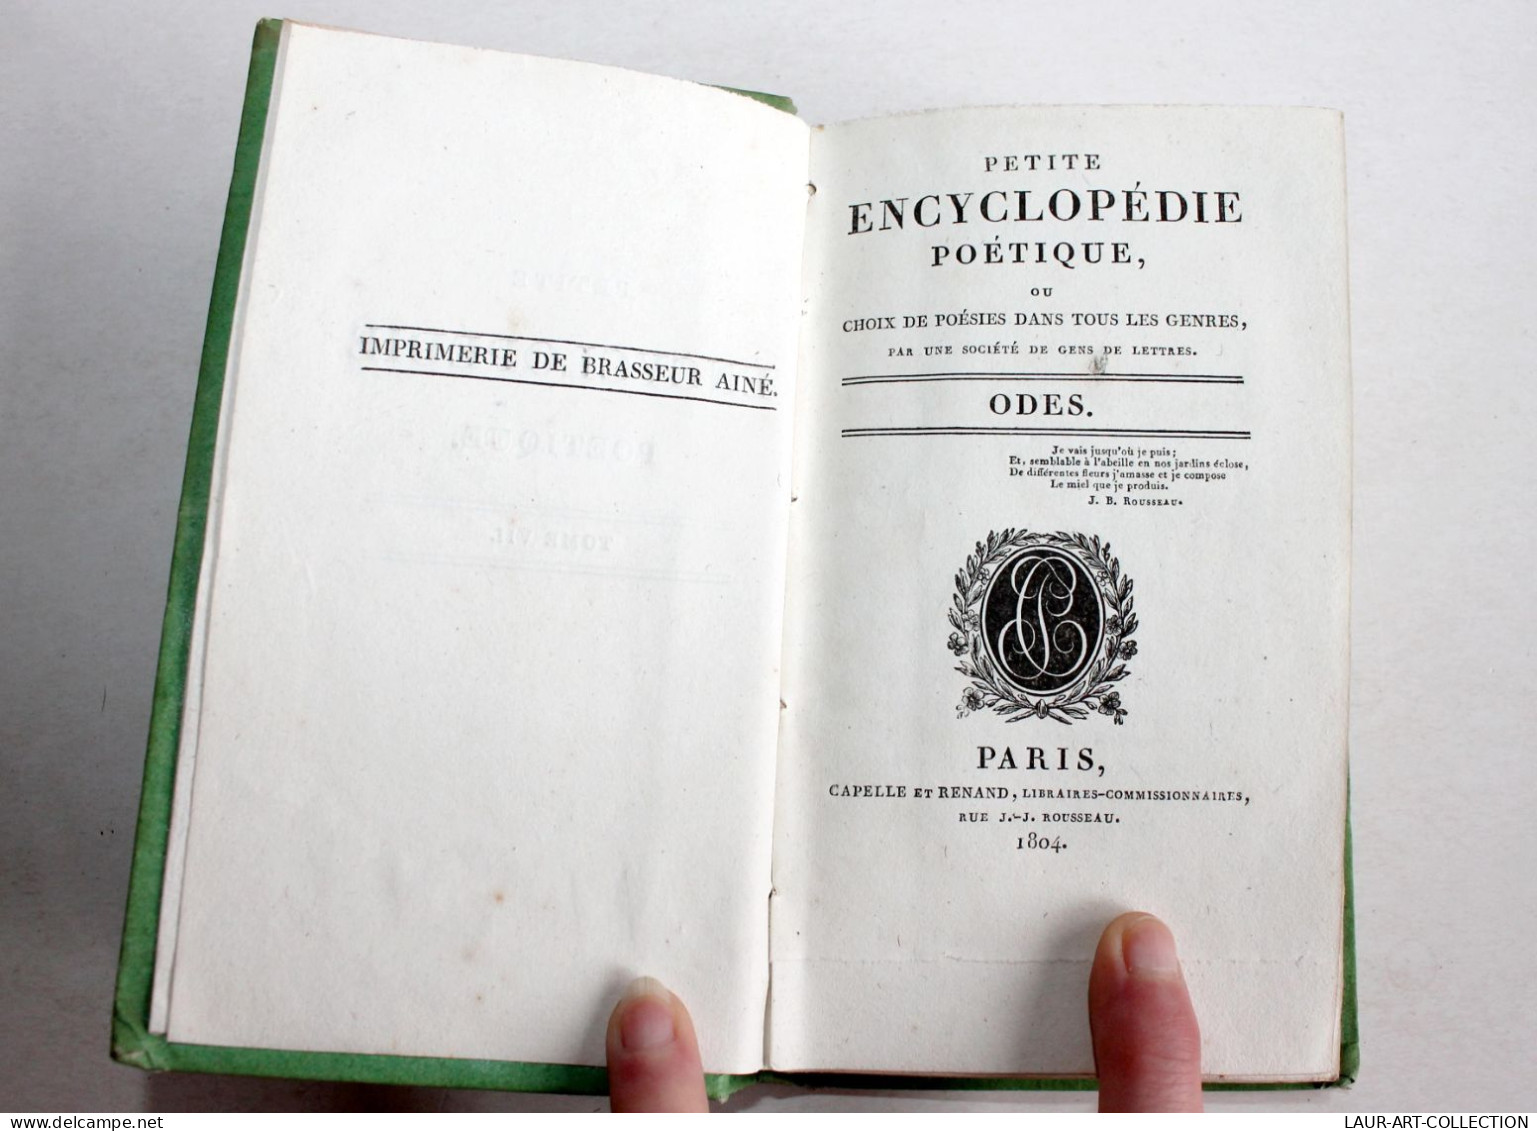 PETITE ENCYCLOPEDIE POETIQUE CHOIX POESIES TOUS GENRES CONTENANT 50 ODES 1804 T7 / ANCIEN LIVRE XIXe SIECLE (1803.184) - Auteurs Français